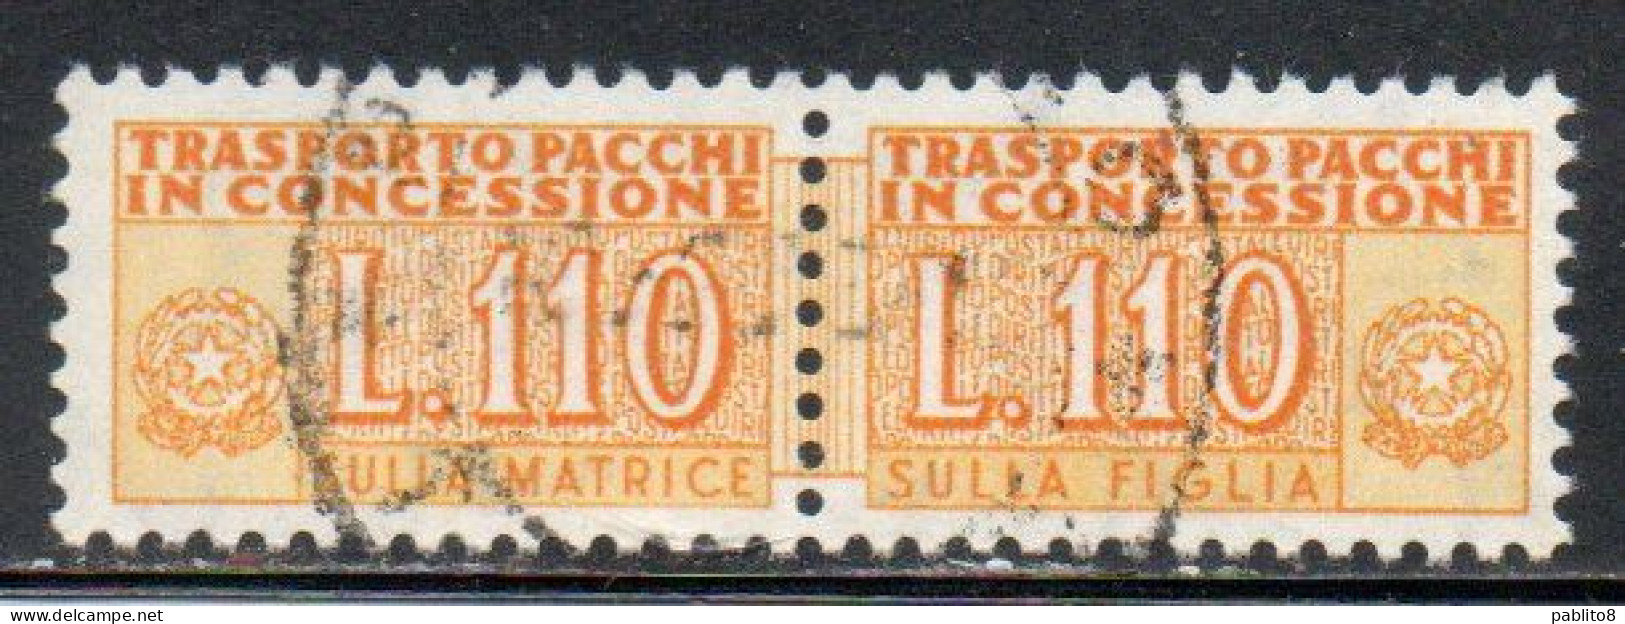 ITALIA REPUBBLICA ITALY REPUBLIC 1955 1981 PACCHI IN CONCESSIONE PARCEL POST STELLE STARS 1960 LIRE 110 USATO USED OBLIT - Concessiepaketten